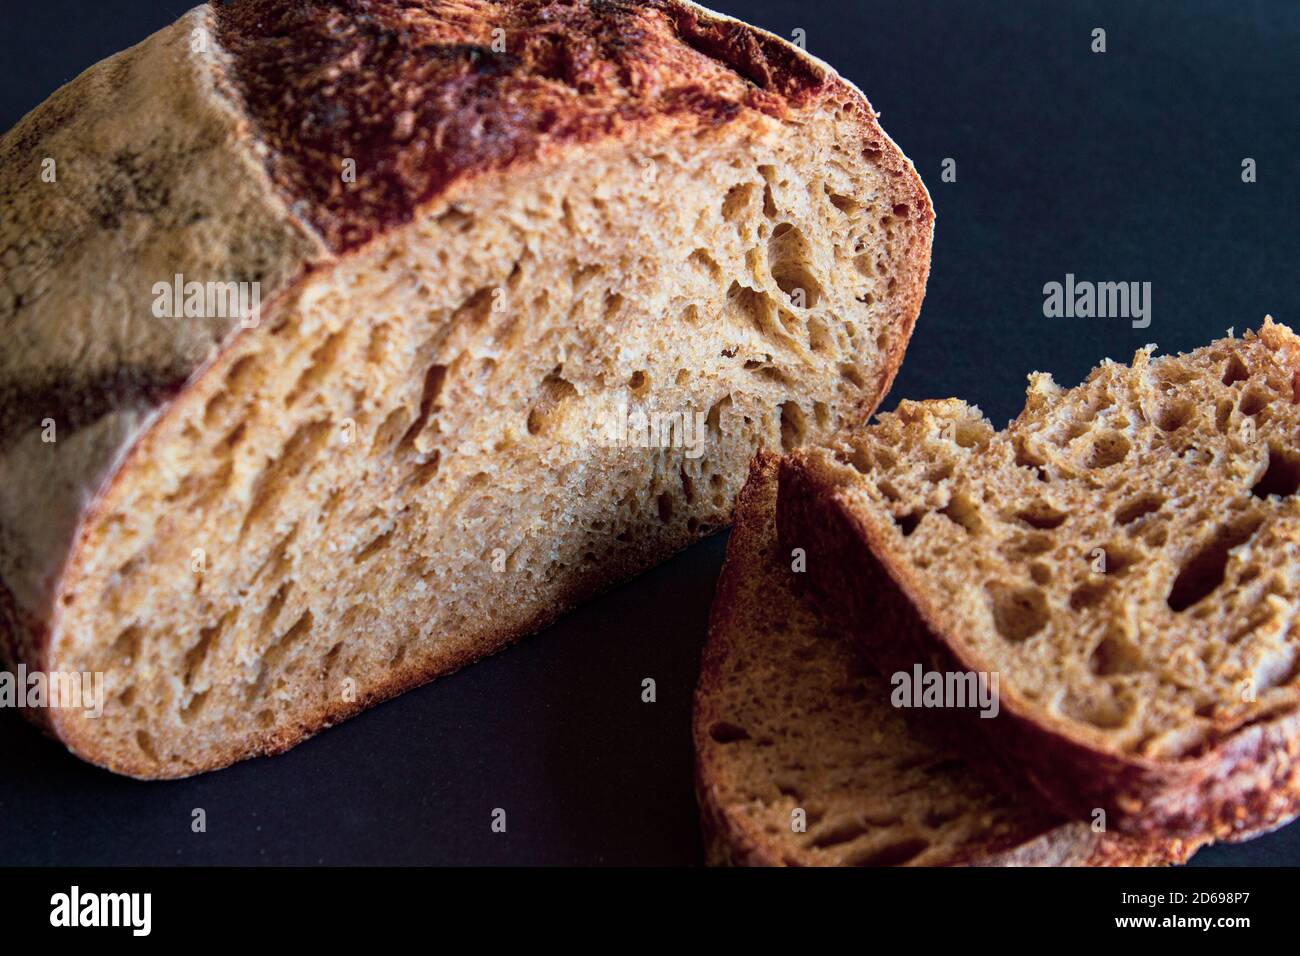 Pane fatto in casa appena sfornato, perfetto per la colazione o come contorno per qualsiasi pasto. Foto Stock